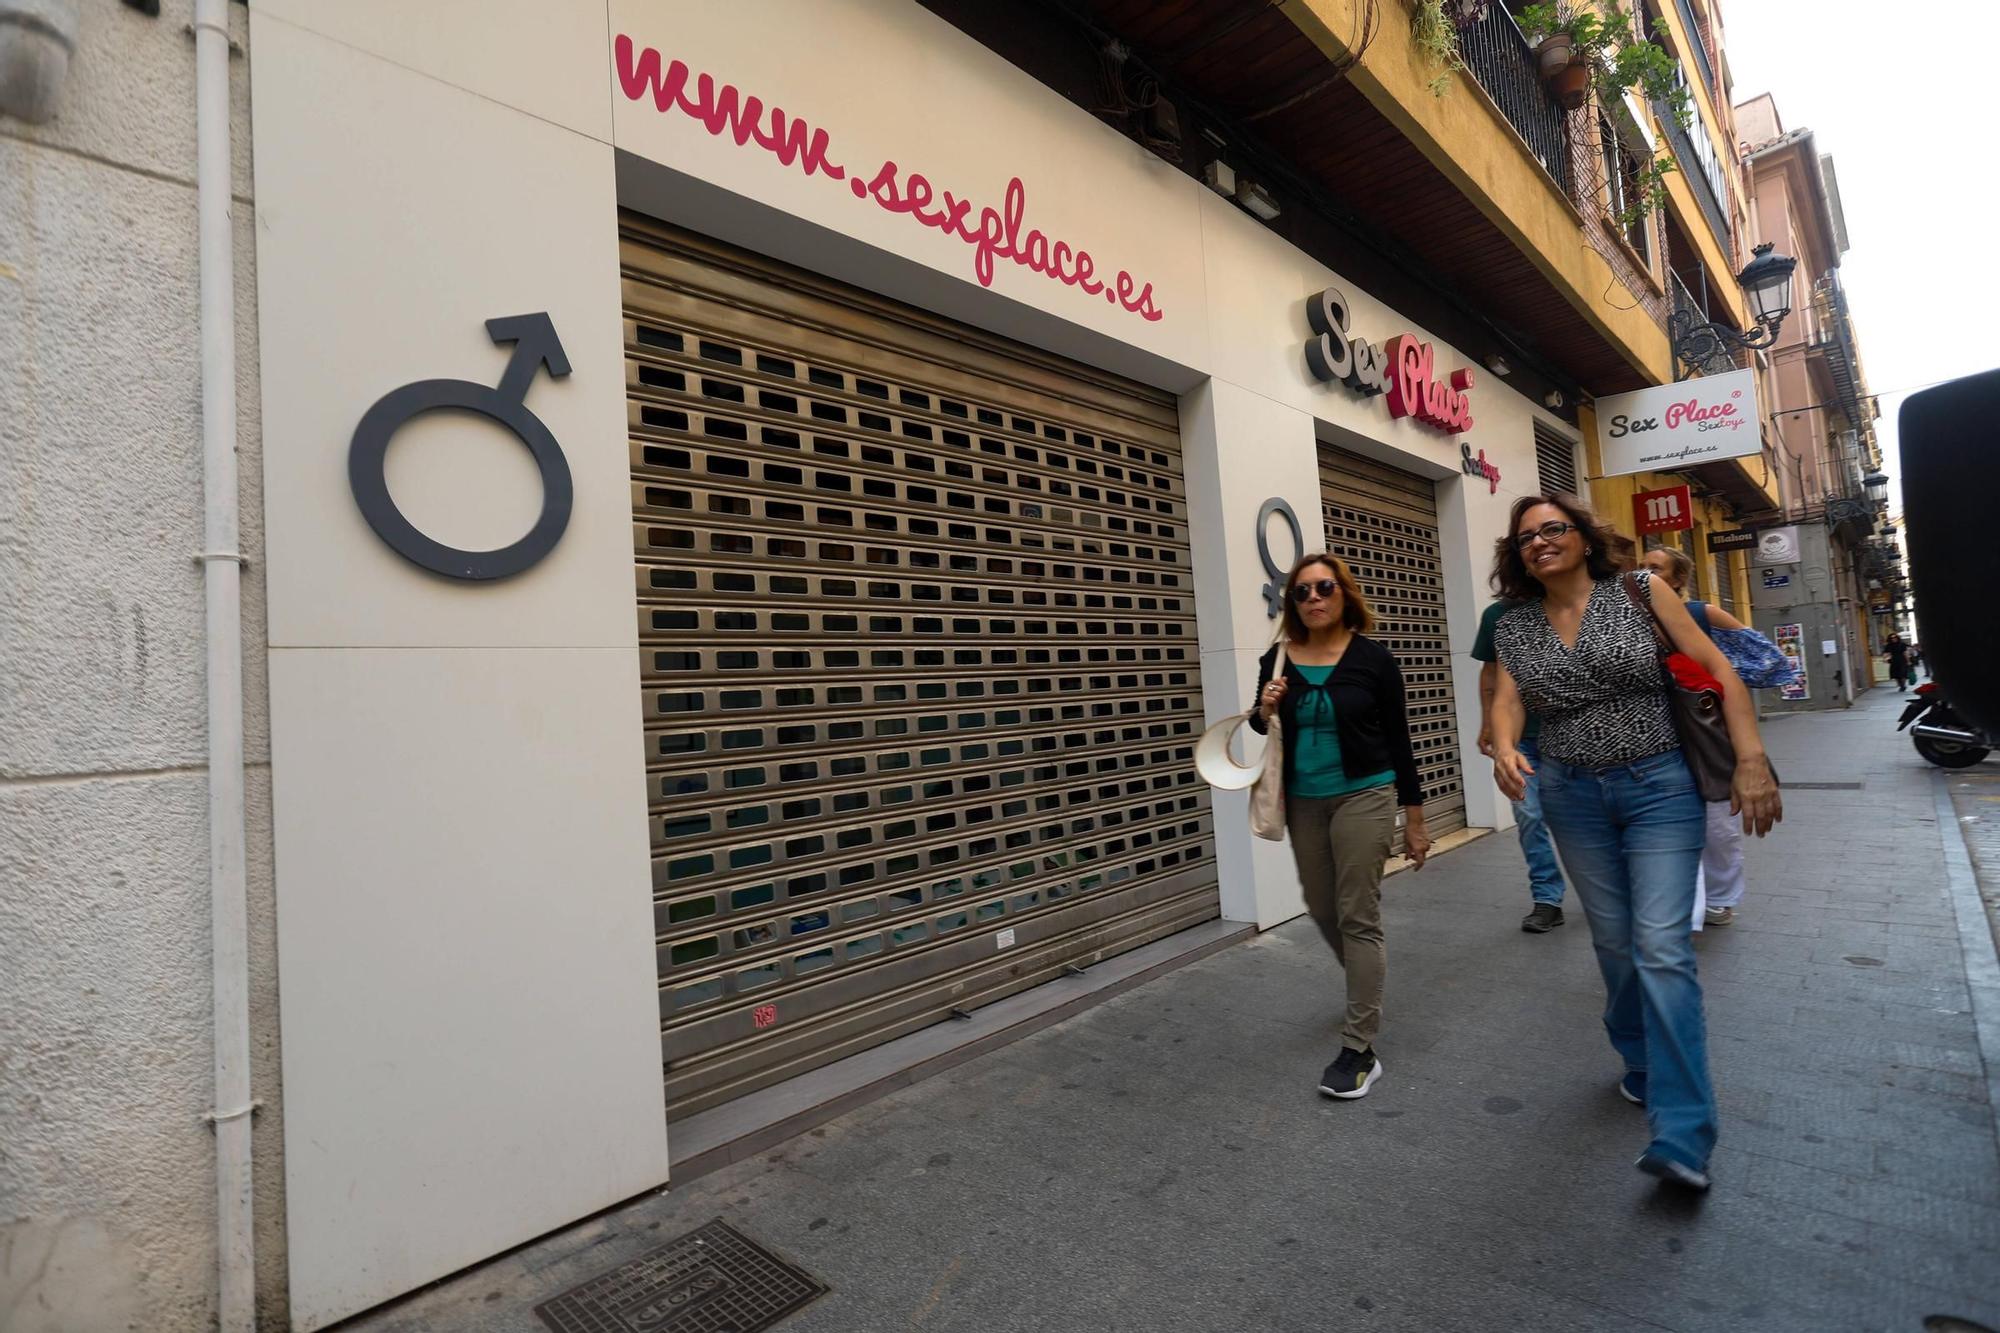 El comercio tradicional desaparece del centro de València por los altos alquileres